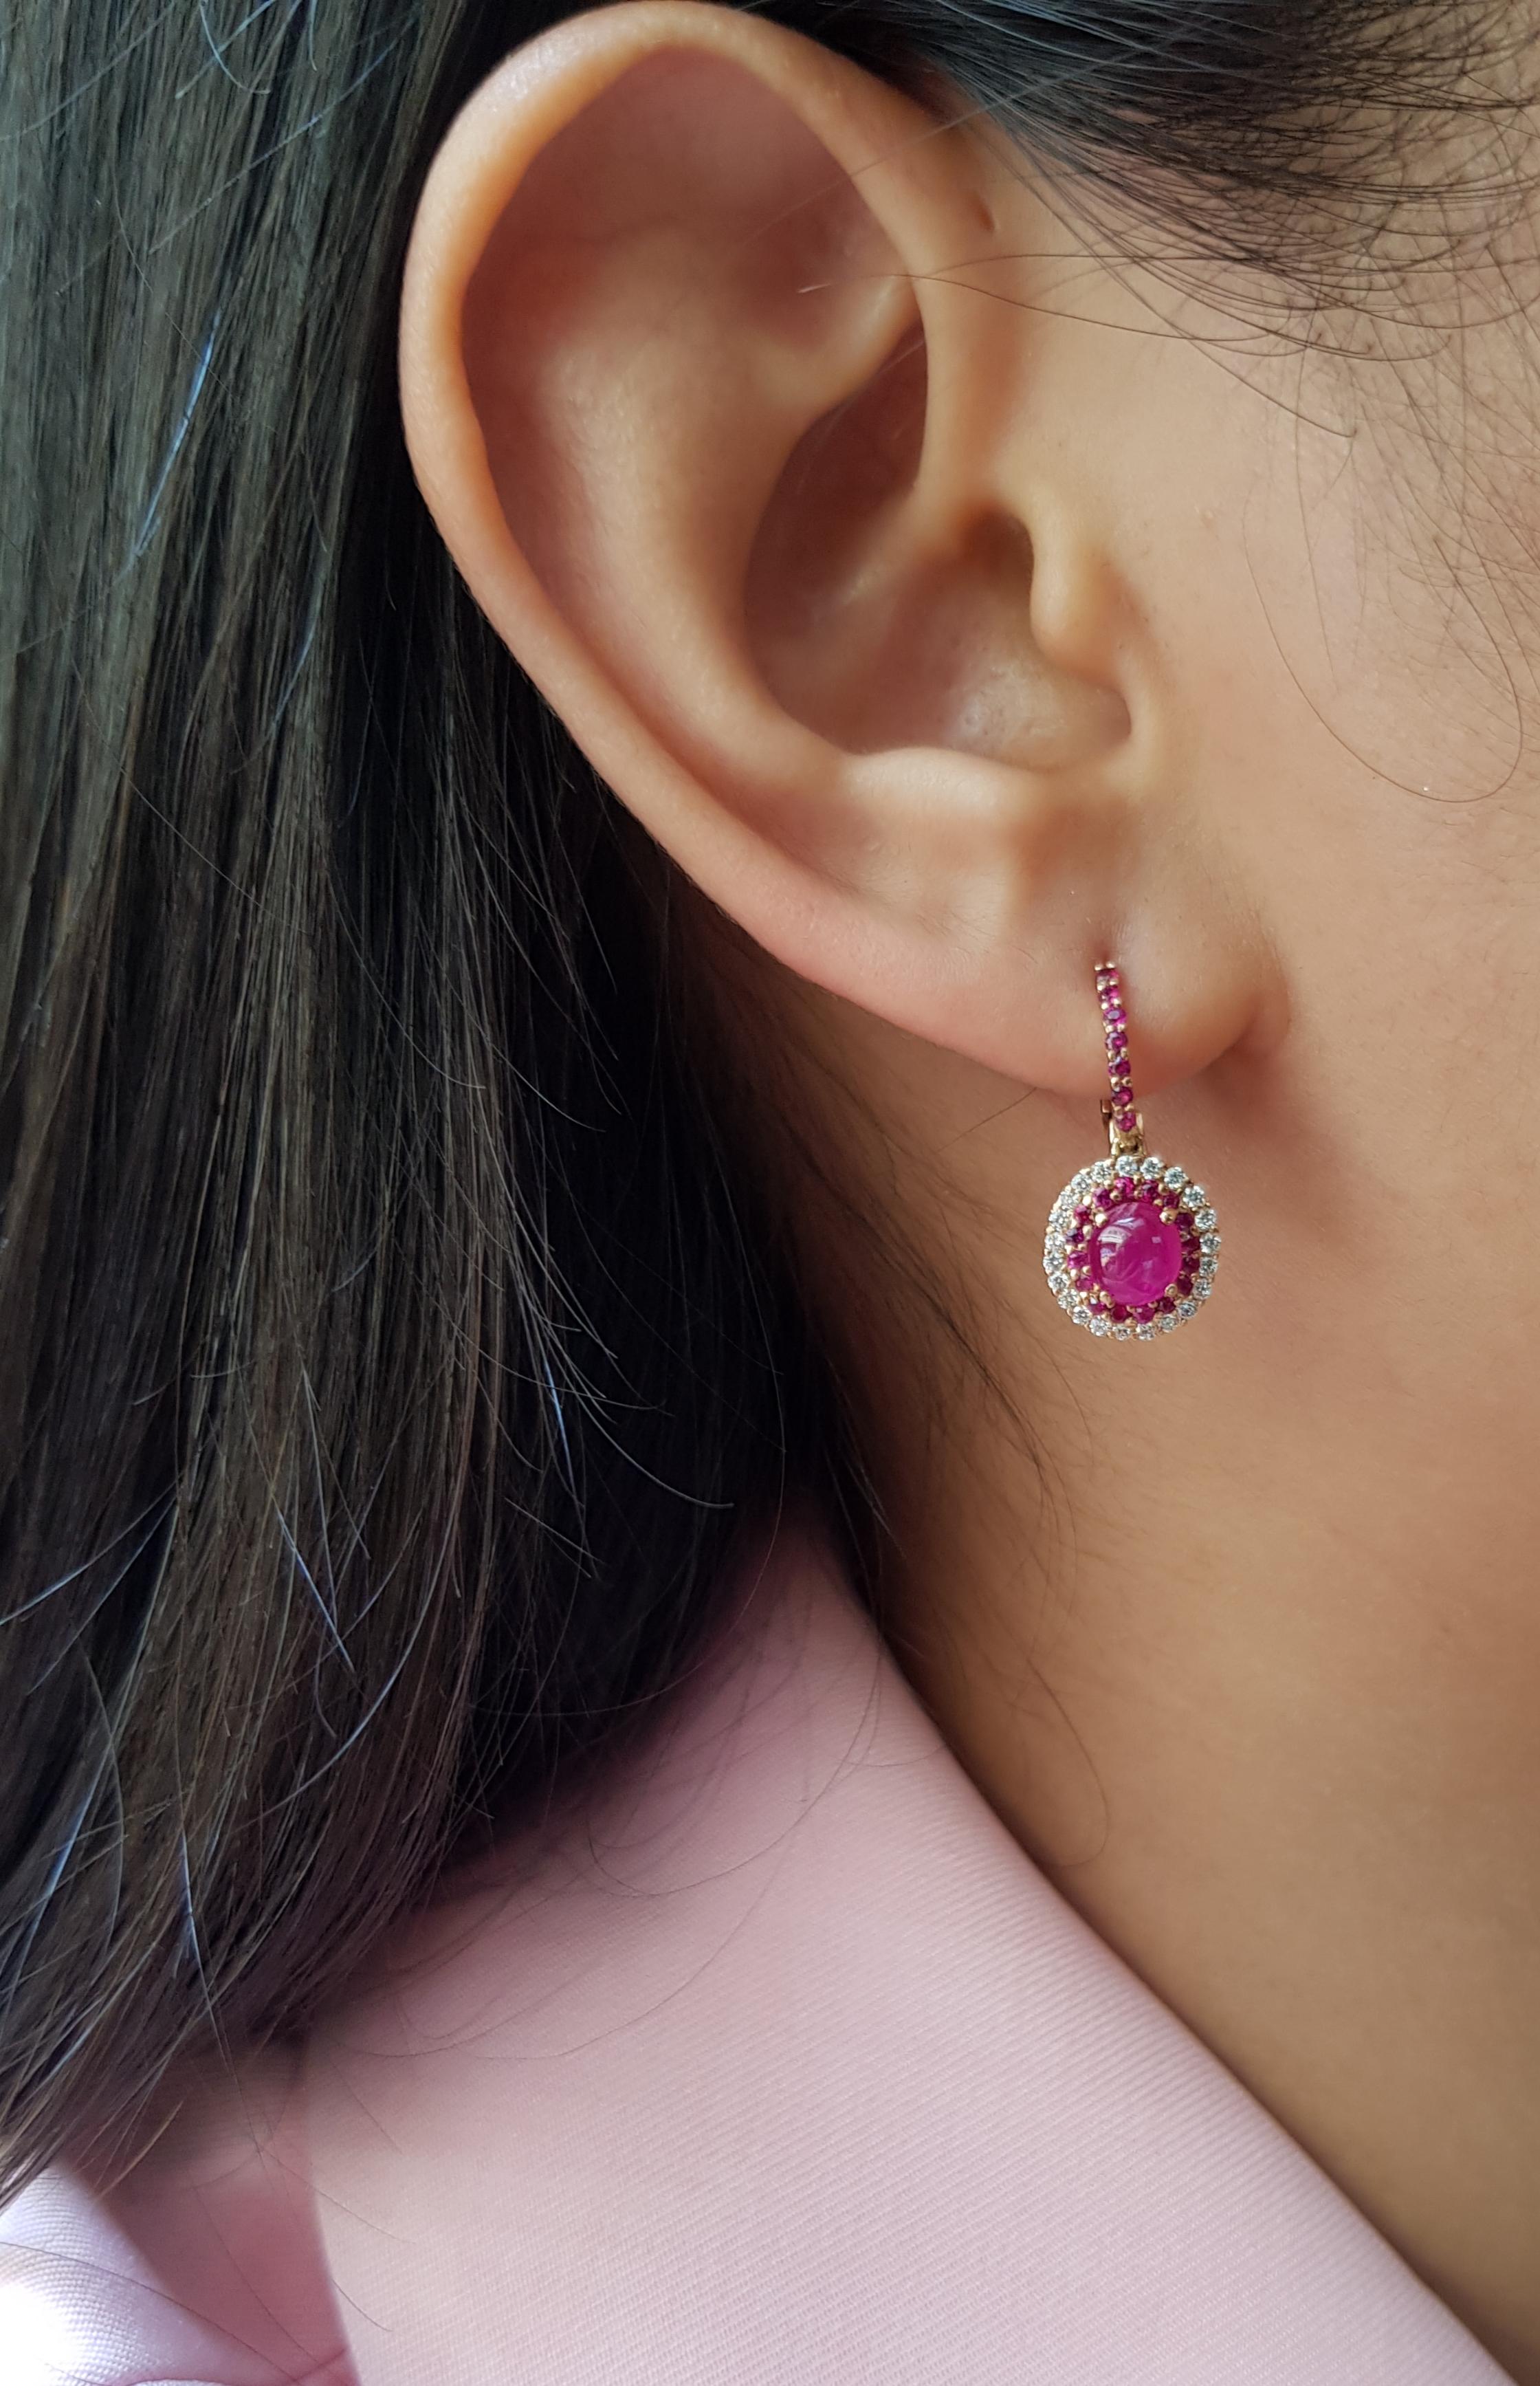 Cabochon Rubin 2,18 Karat mit Diamant 0,29 Karat und rosa Saphir 0,42 Karat Ohrringe in 18 Karat Roségold gefasst

Breite: 1,0 cm
Länge: 2,5 cm 

